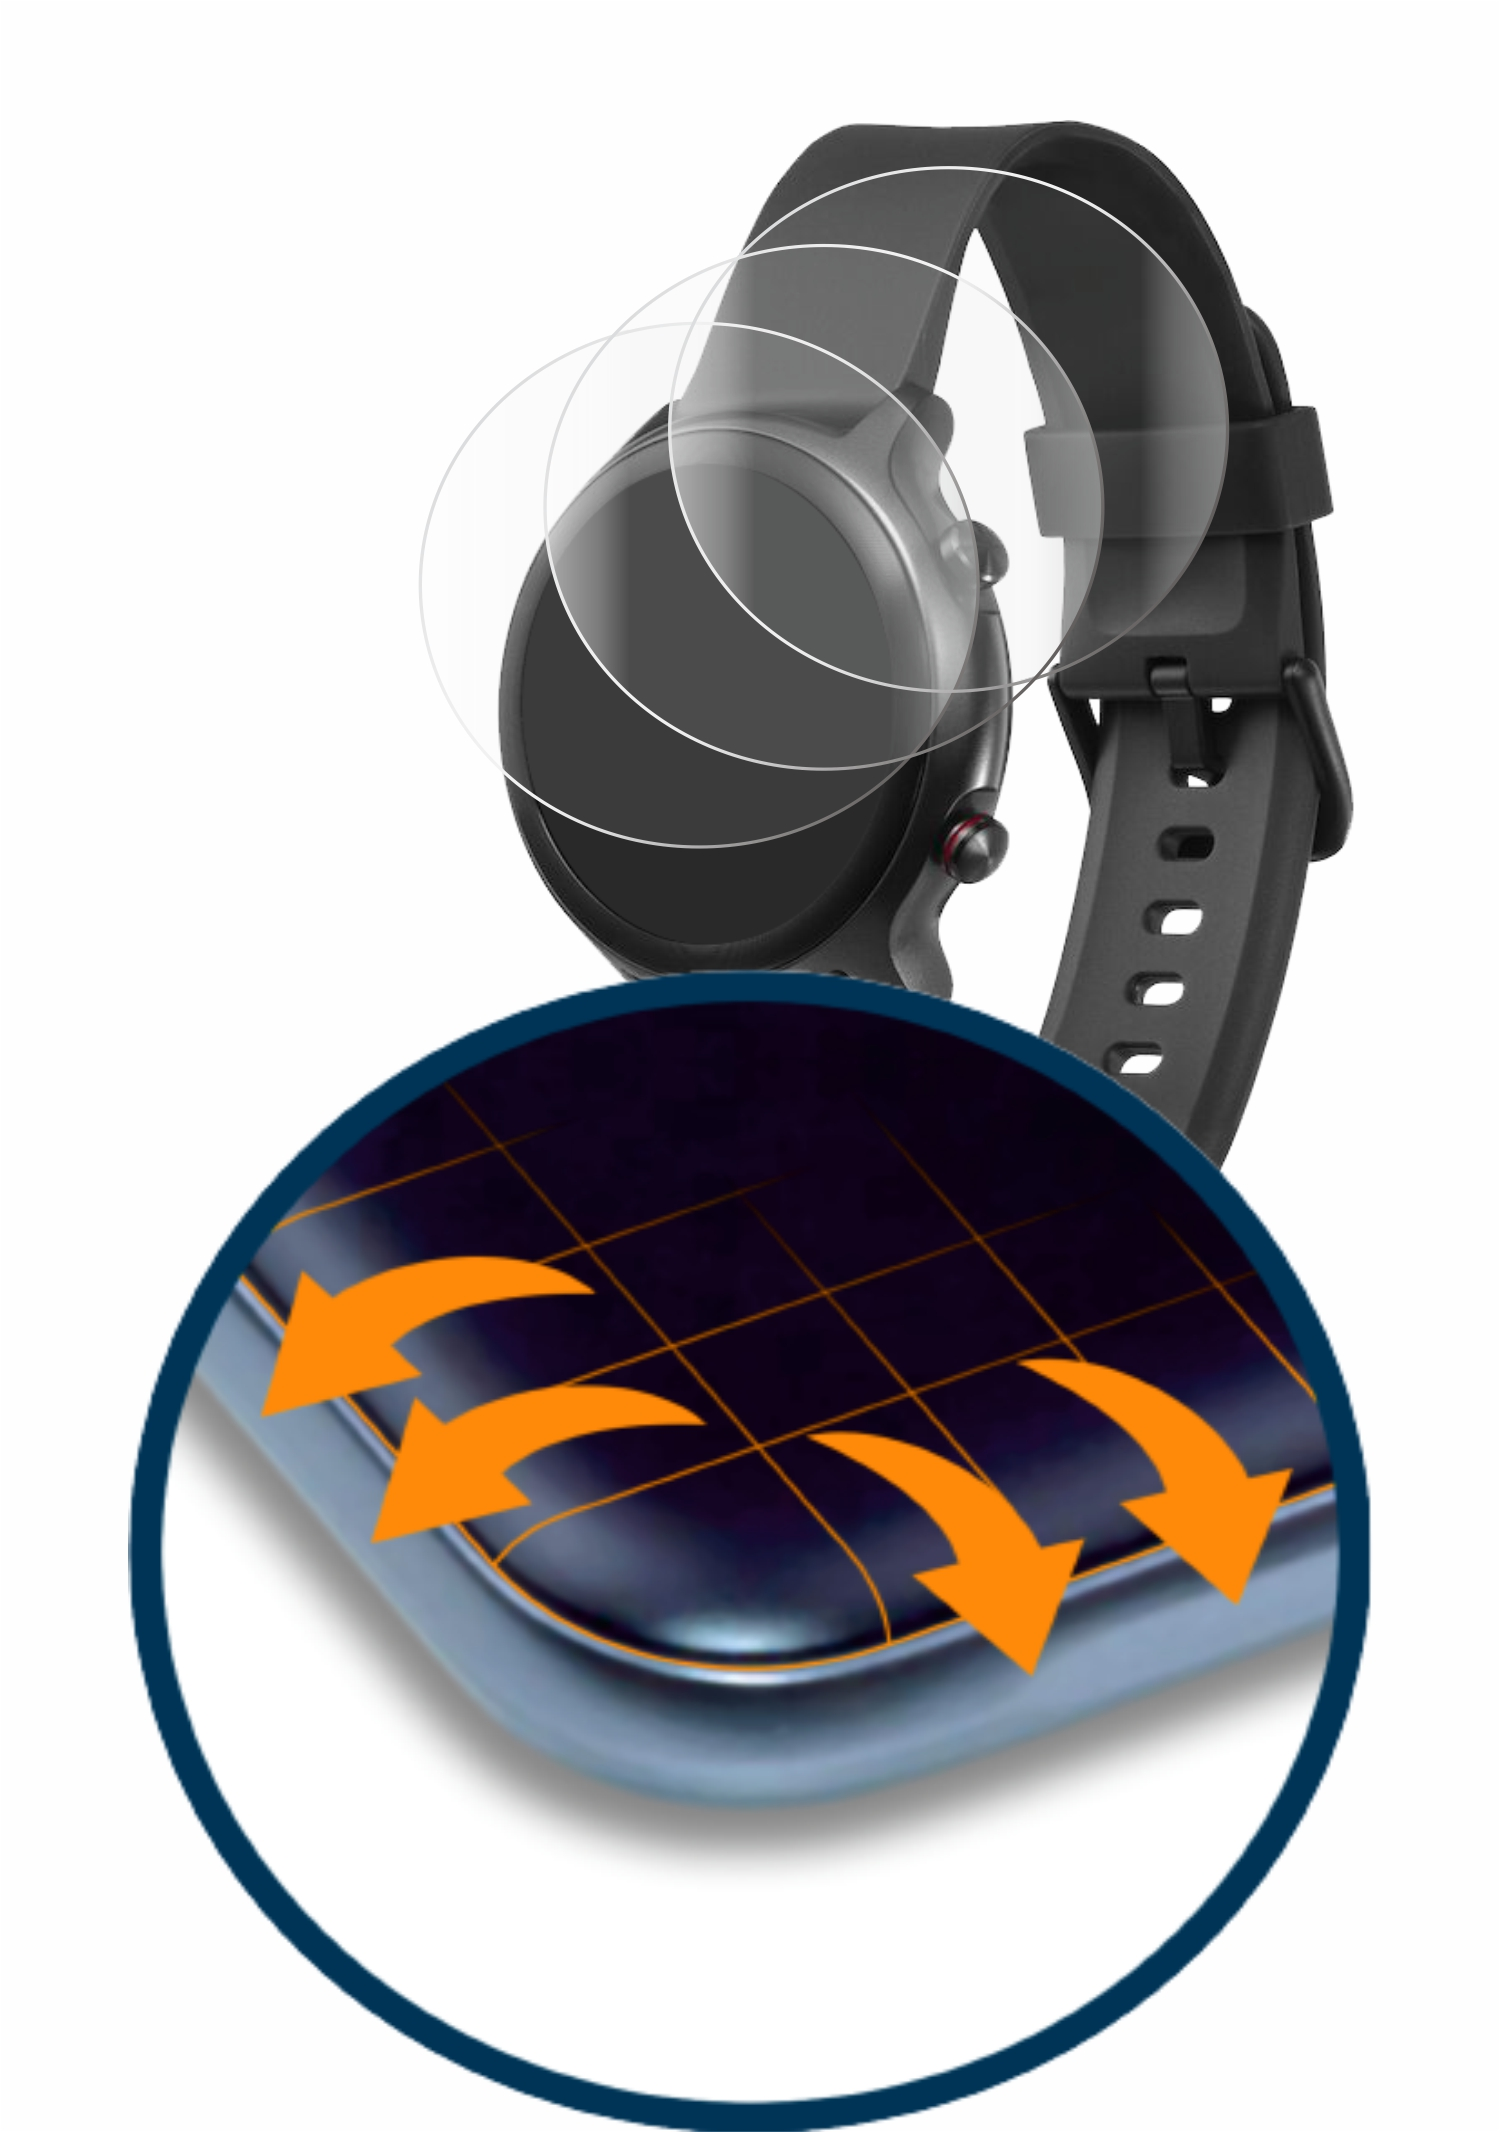 SAVVIES 4x Flex Full-Cover Watch) Schutzfolie(für 3D Doro Curved